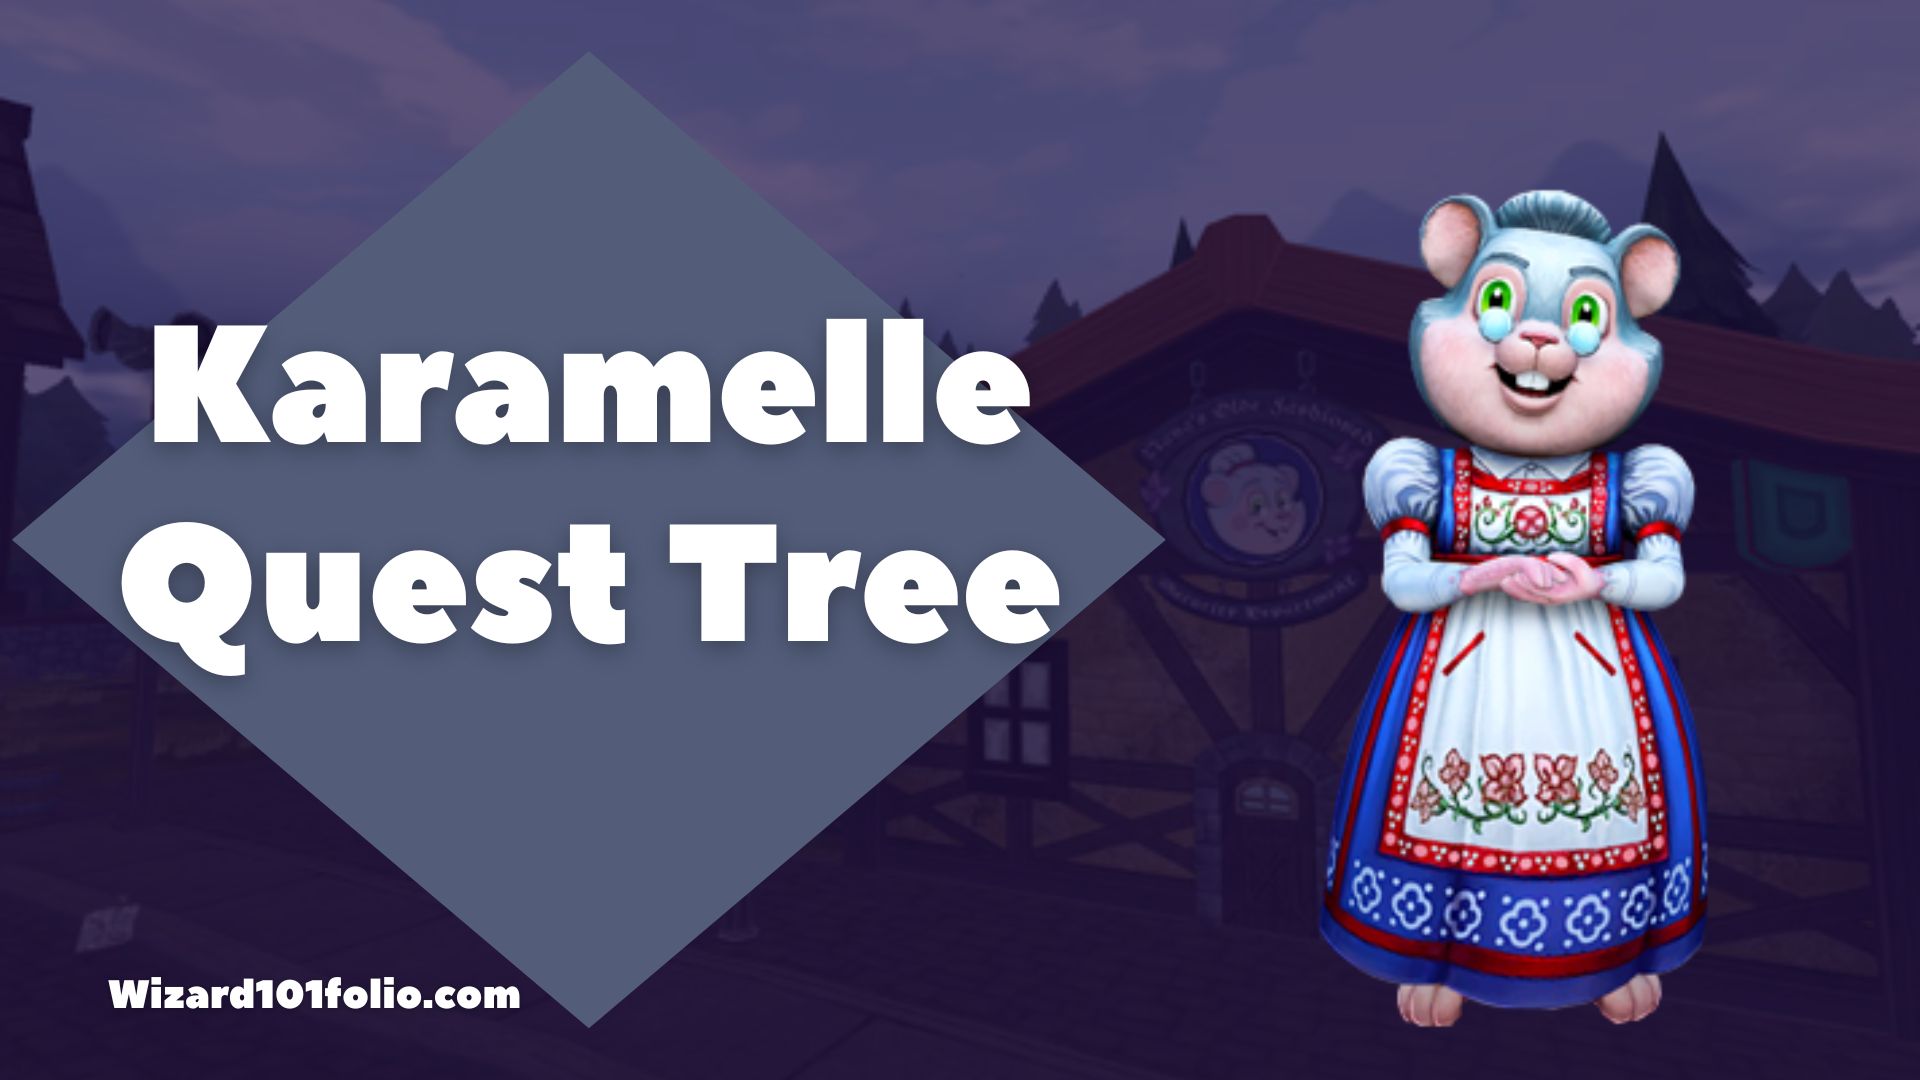 Karamelle Quest Tree